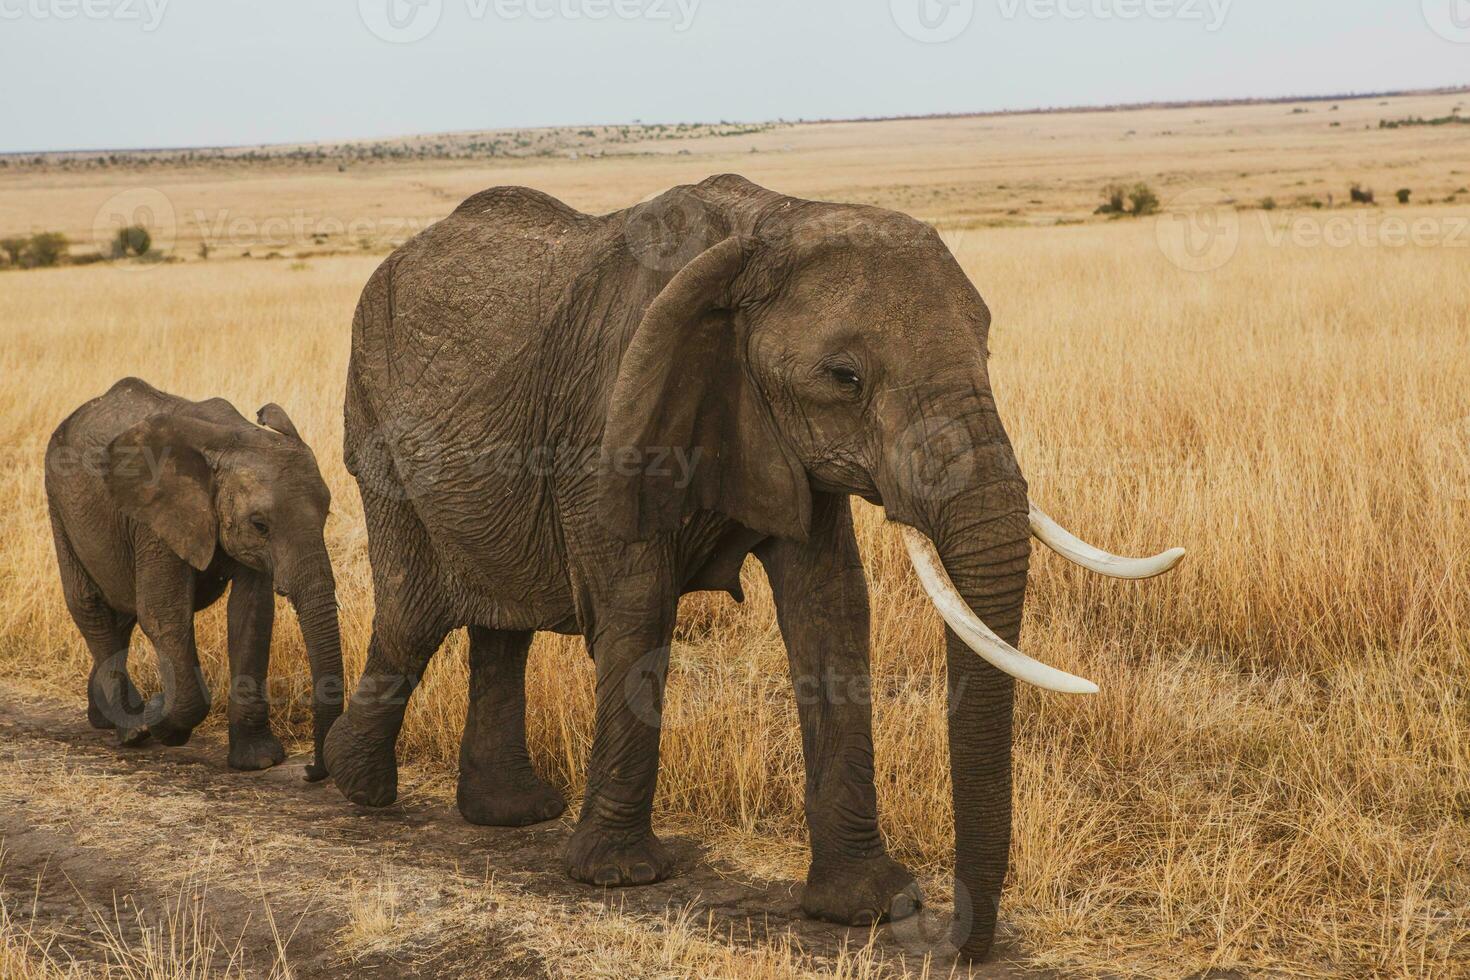 safari par le sauvage monde de le maasaï mara nationale parc dans Kenya. ici vous pouvez voir antilope, zèbre, éléphant, les Lions, girafes et beaucoup autre africain animaux. photo